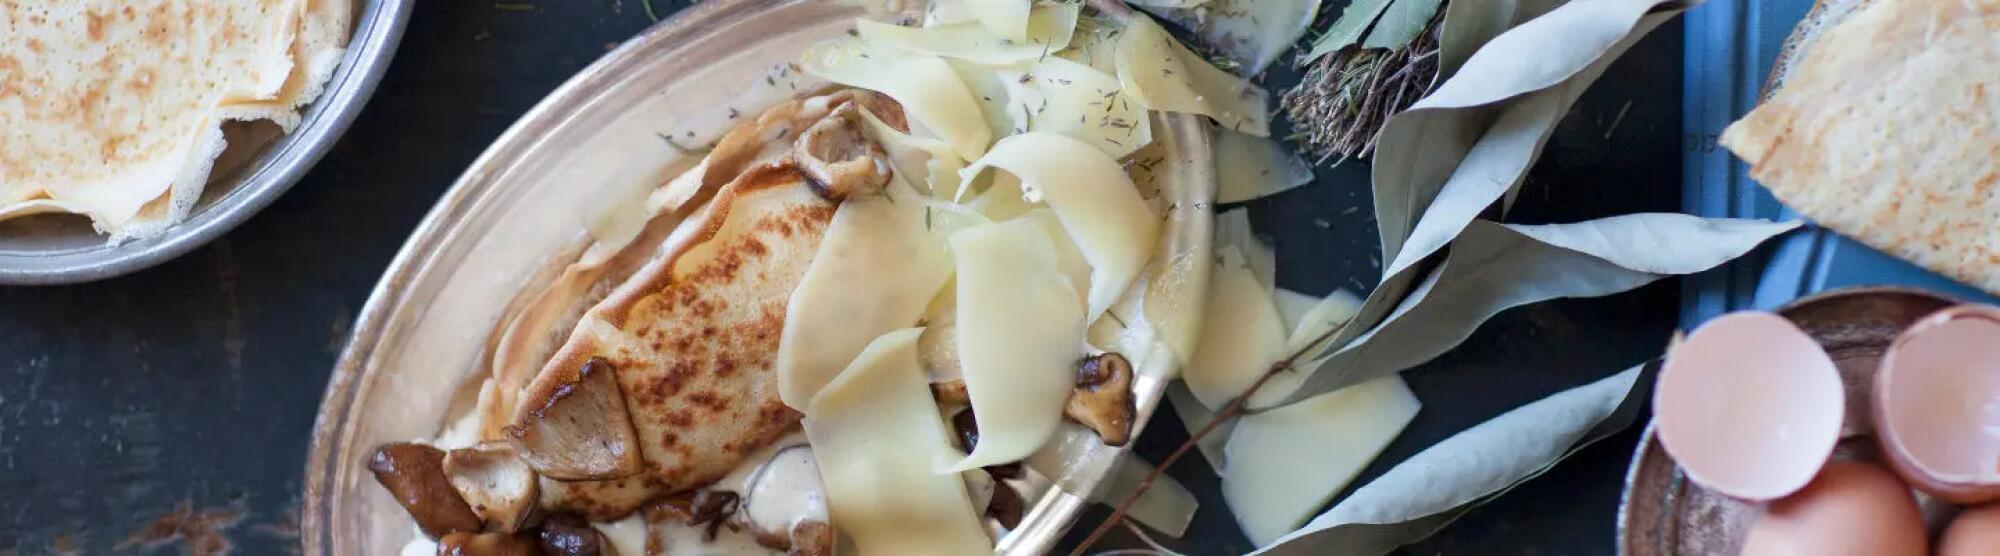 Recette : Crêpe salée aux champignons et fromage